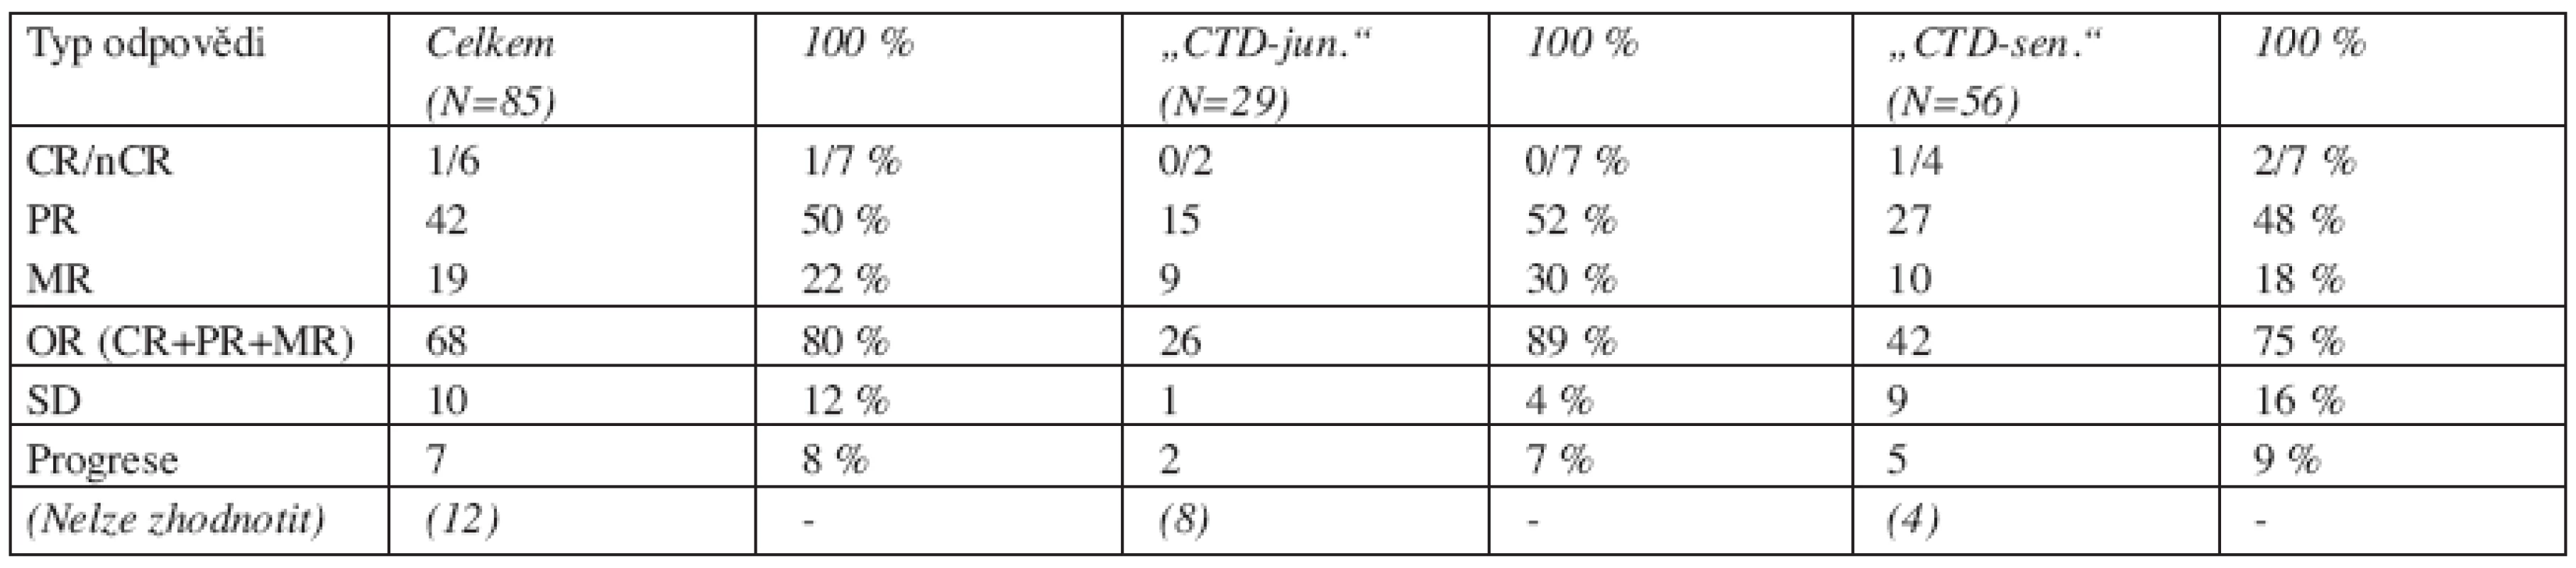 Výsledky léčby režimy „CTD-junior“ a „CTD-senior.